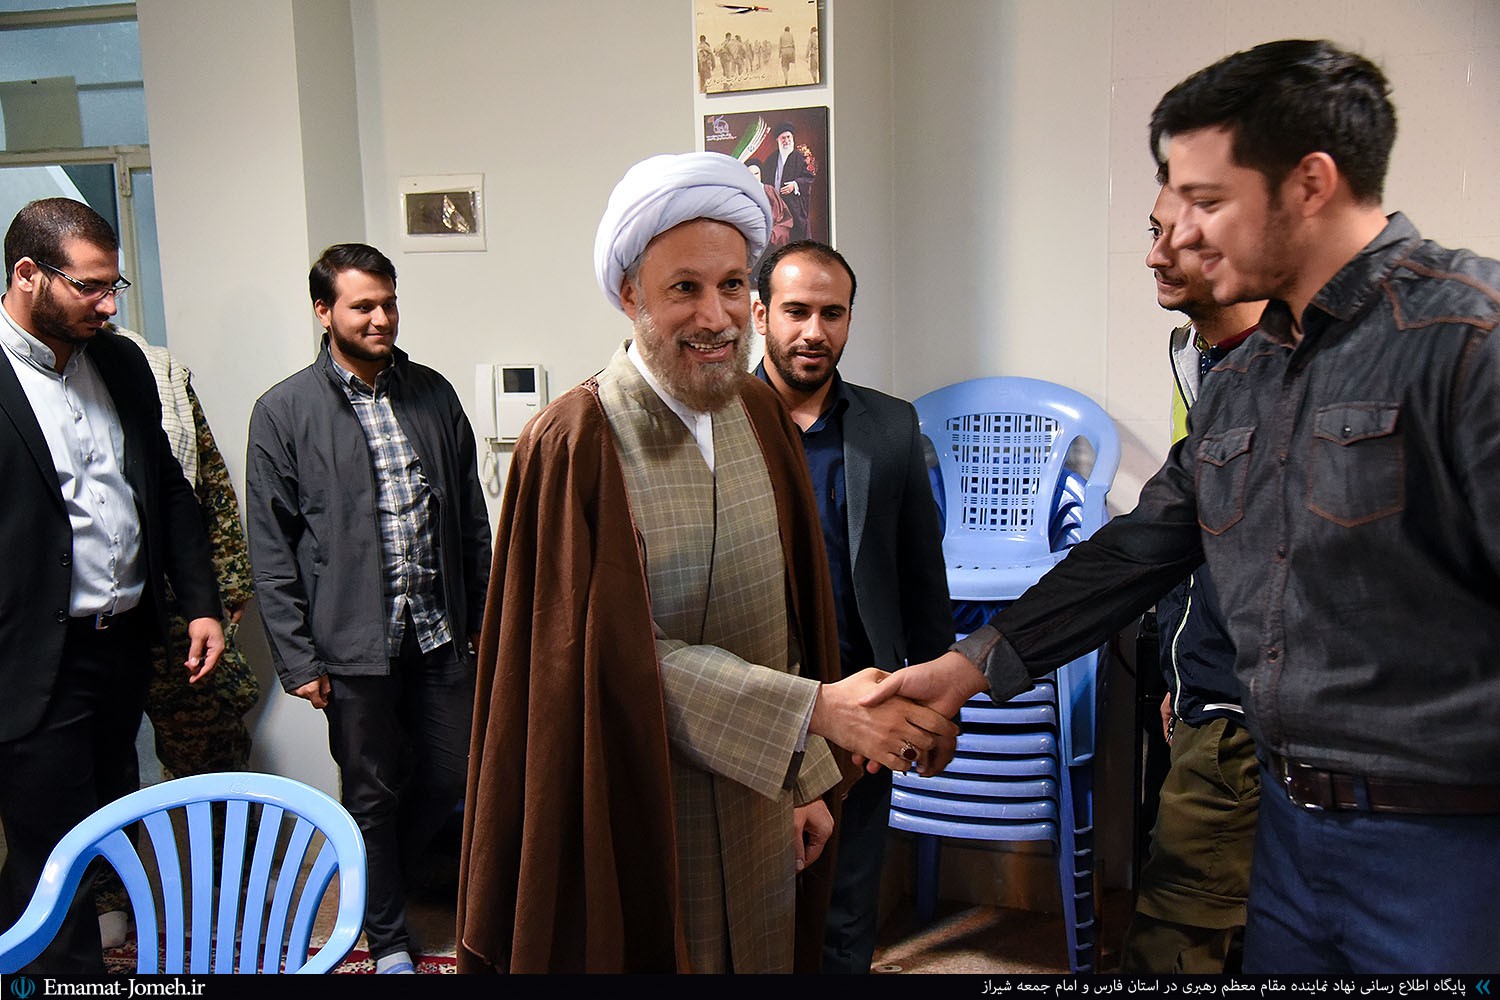 حضور آیت الله دژکام در جمع بسیجیان پایگاه مقاومت مسجد ایرانی شیراز